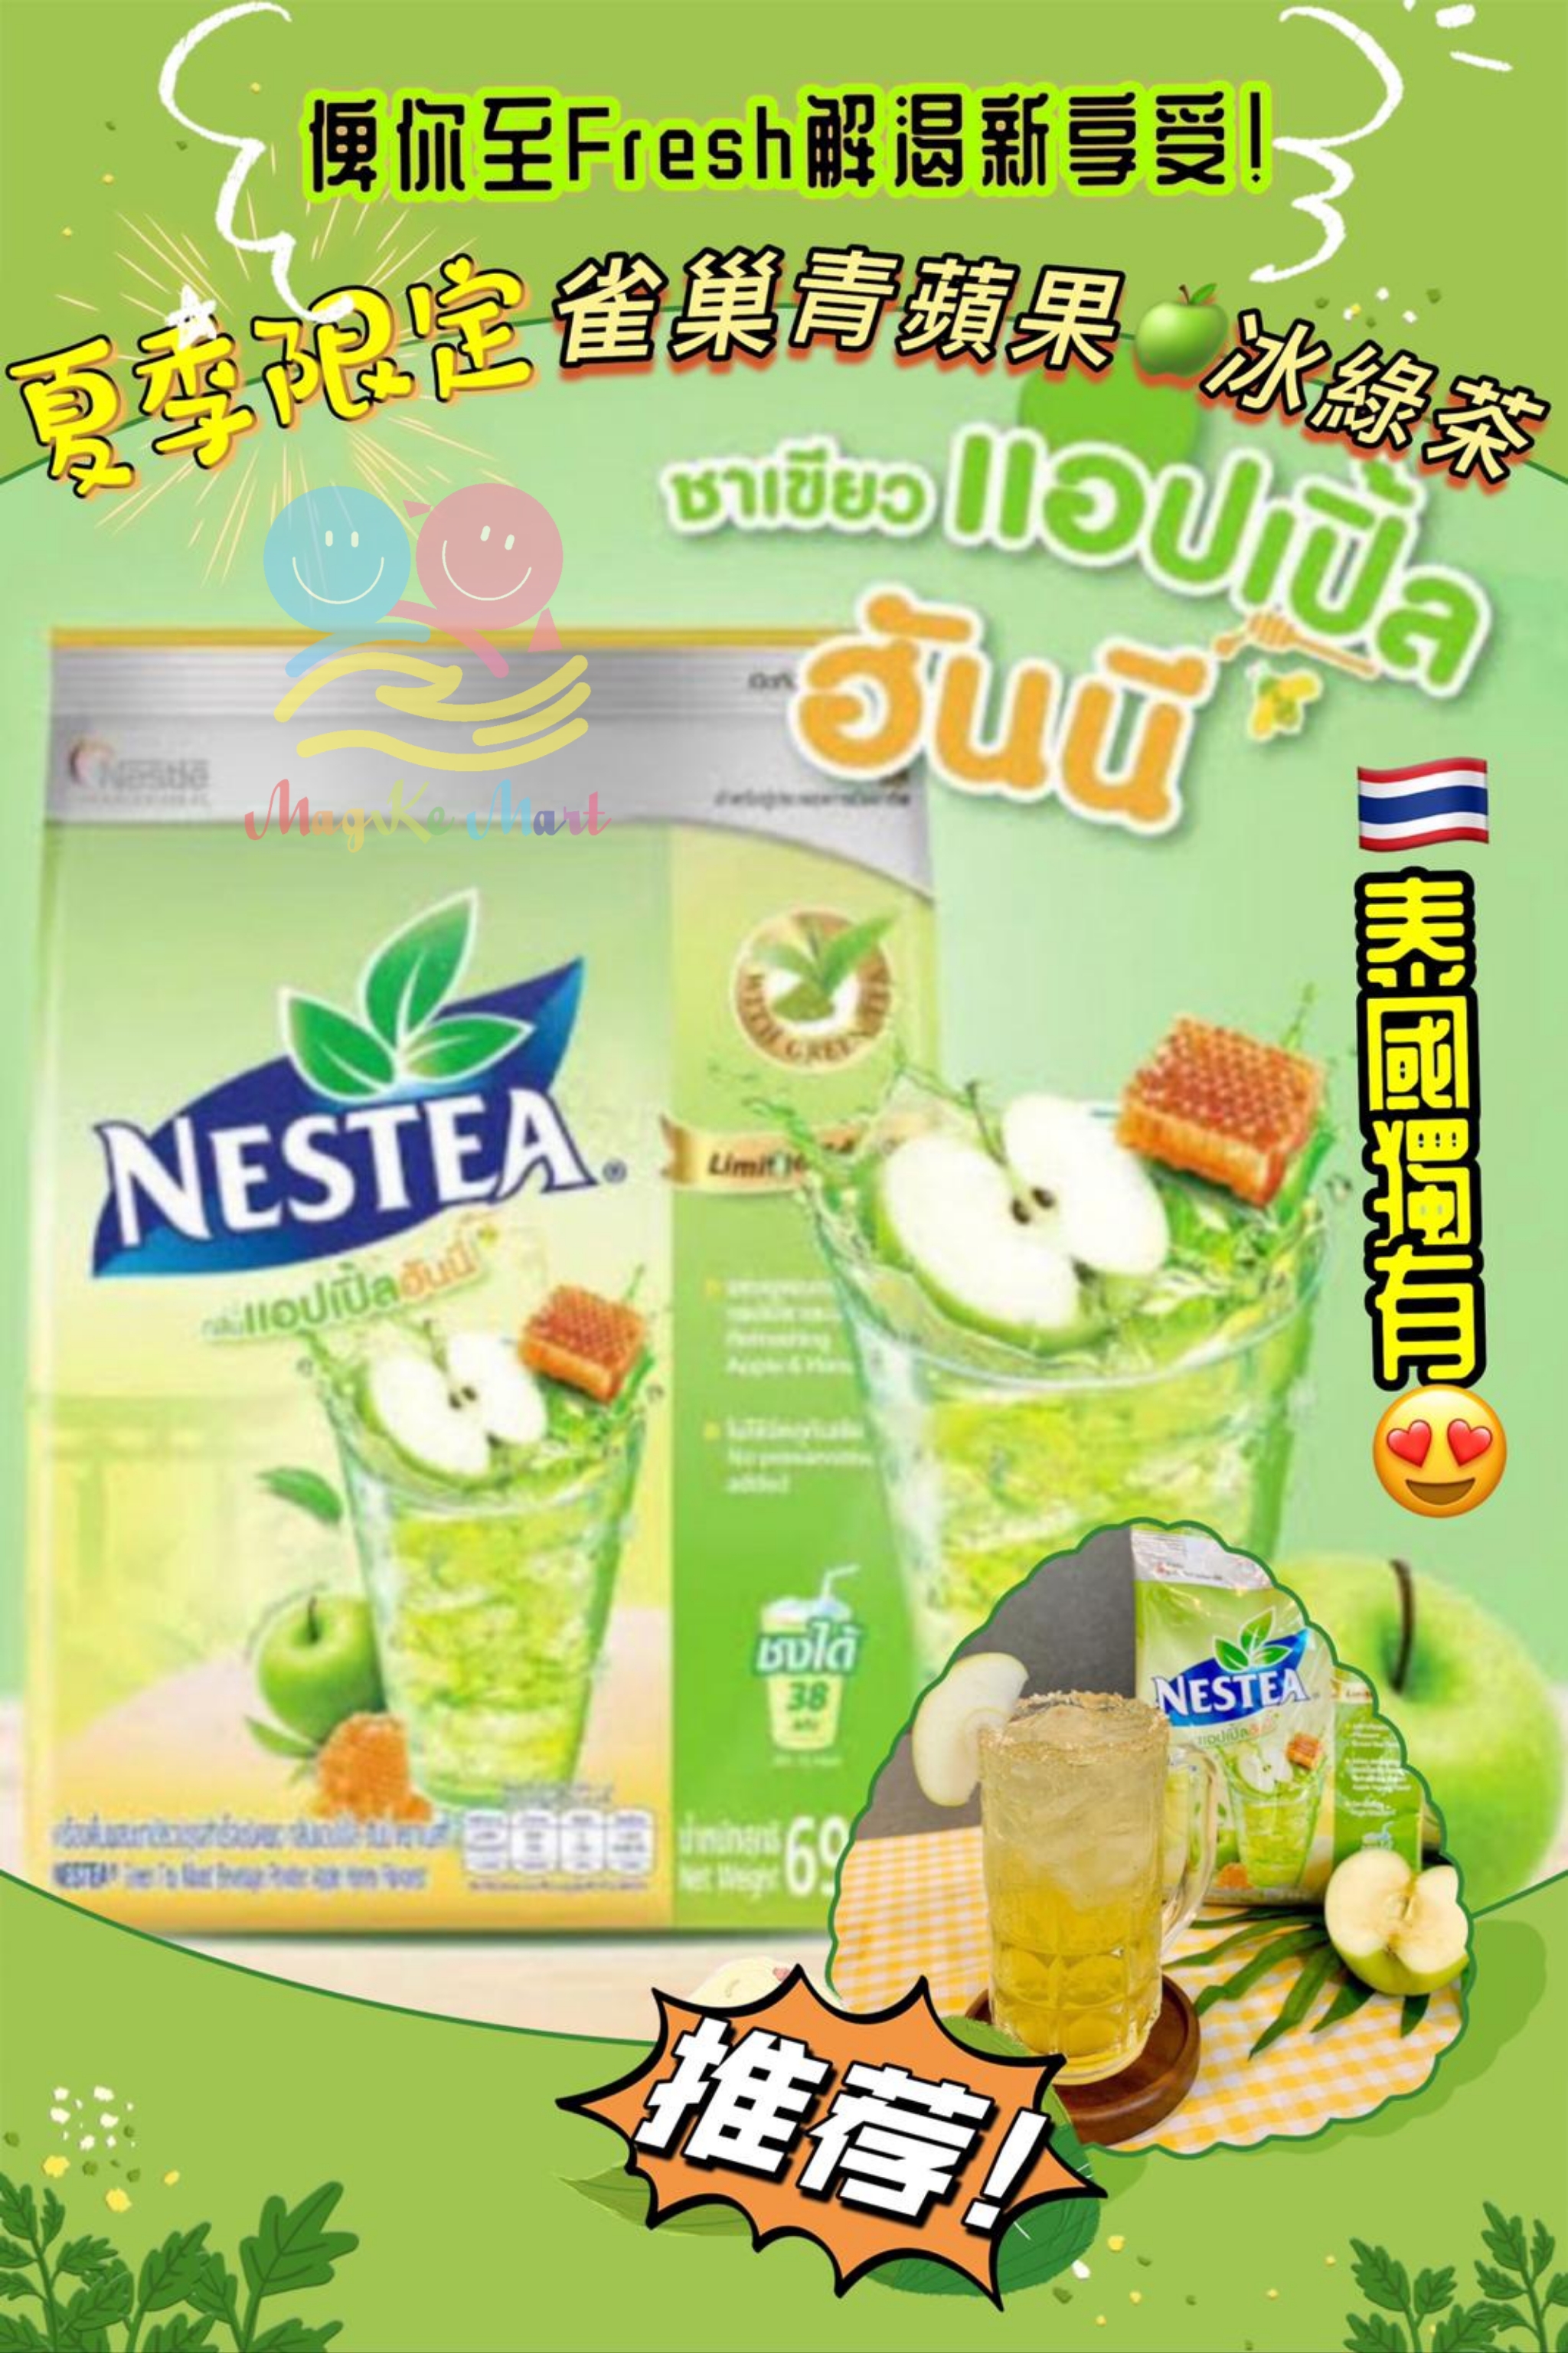 泰國夏季限定雀巢青蘋果蜂蜜冰綠茶 690g